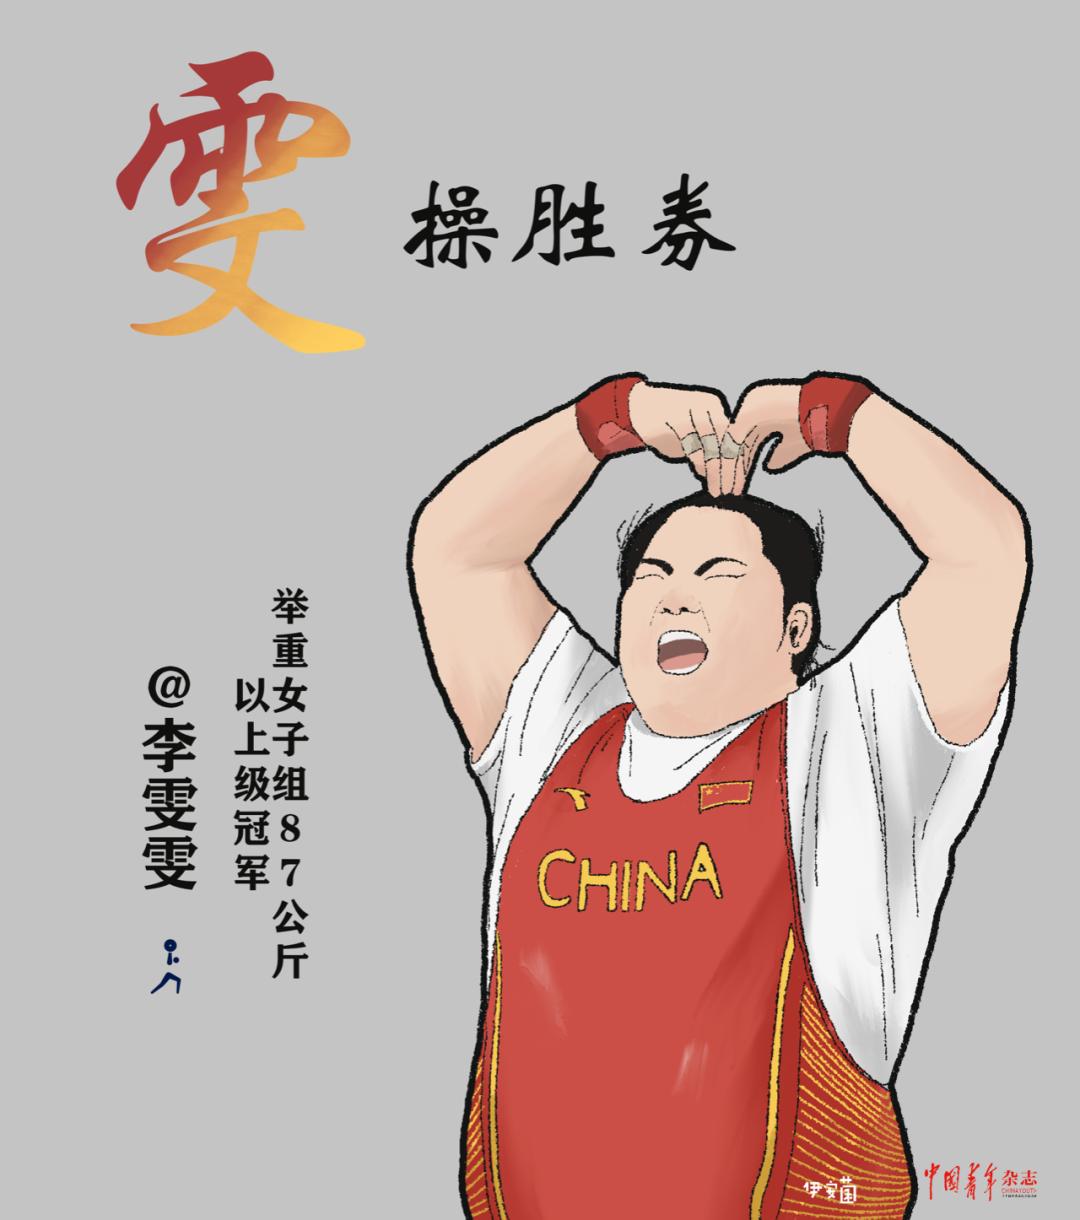 手绘中国运动员奥运夺金时刻